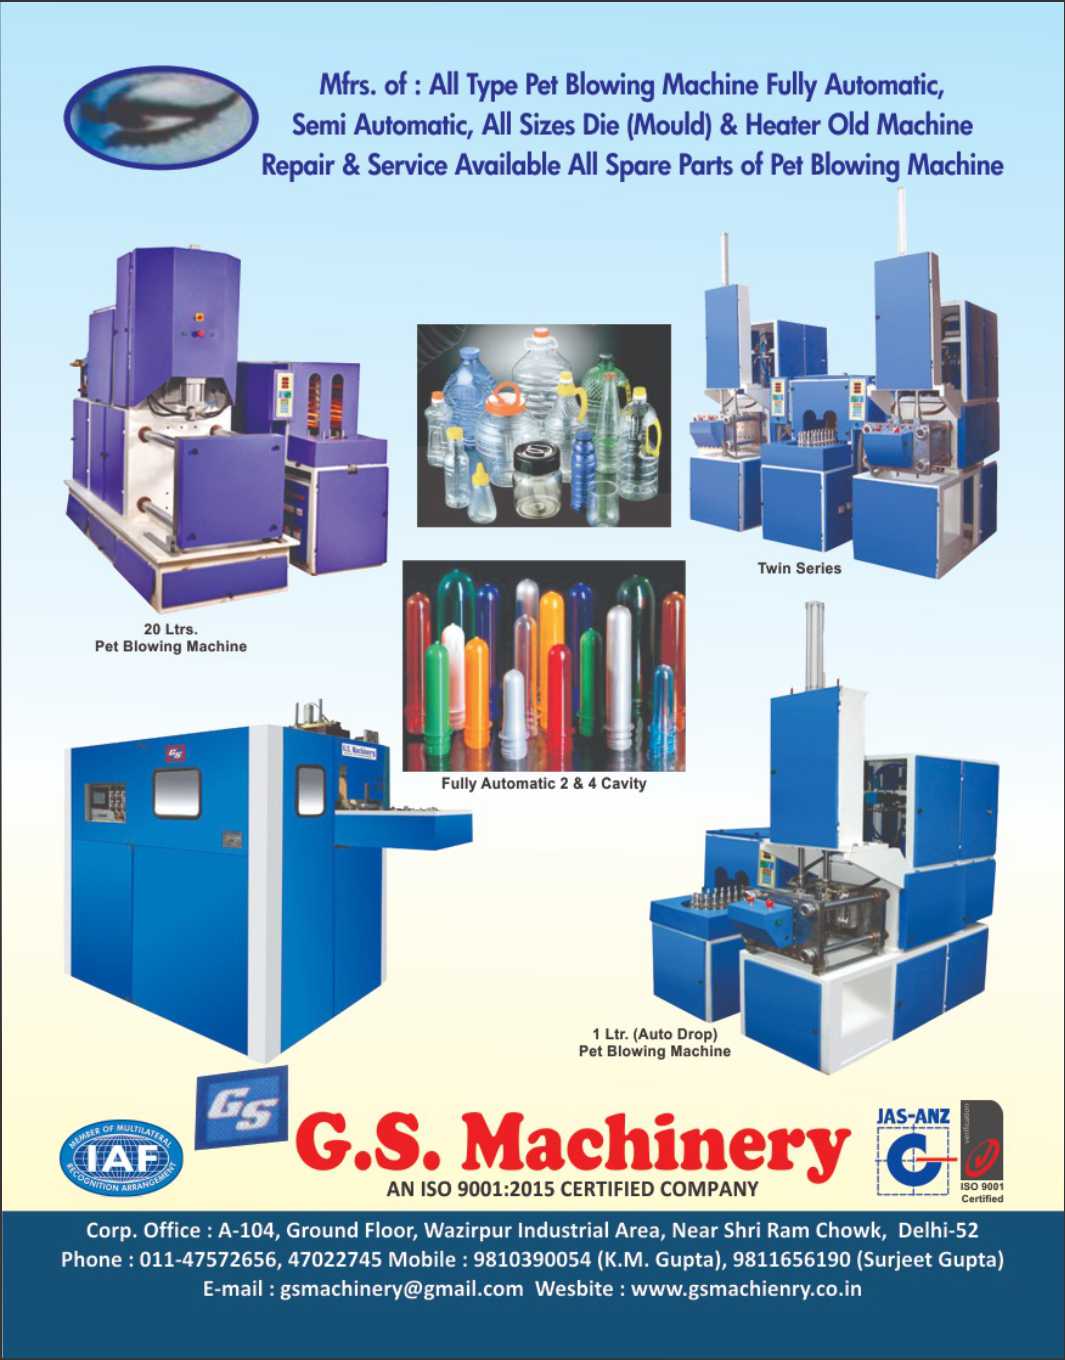 G.S. Machinery